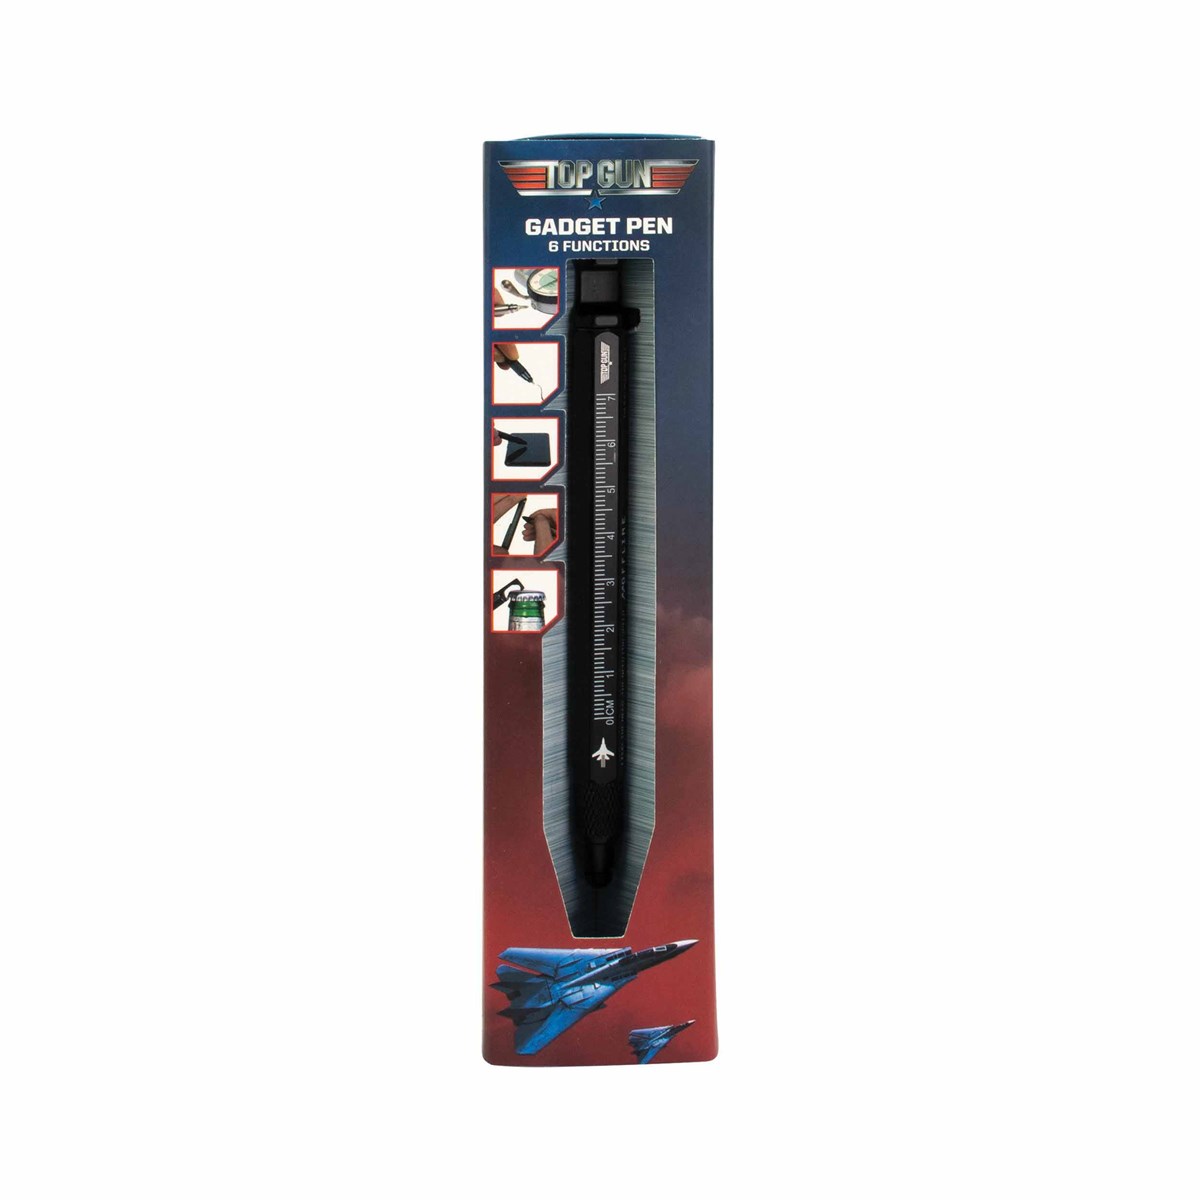 Top Gun Gadget Pen